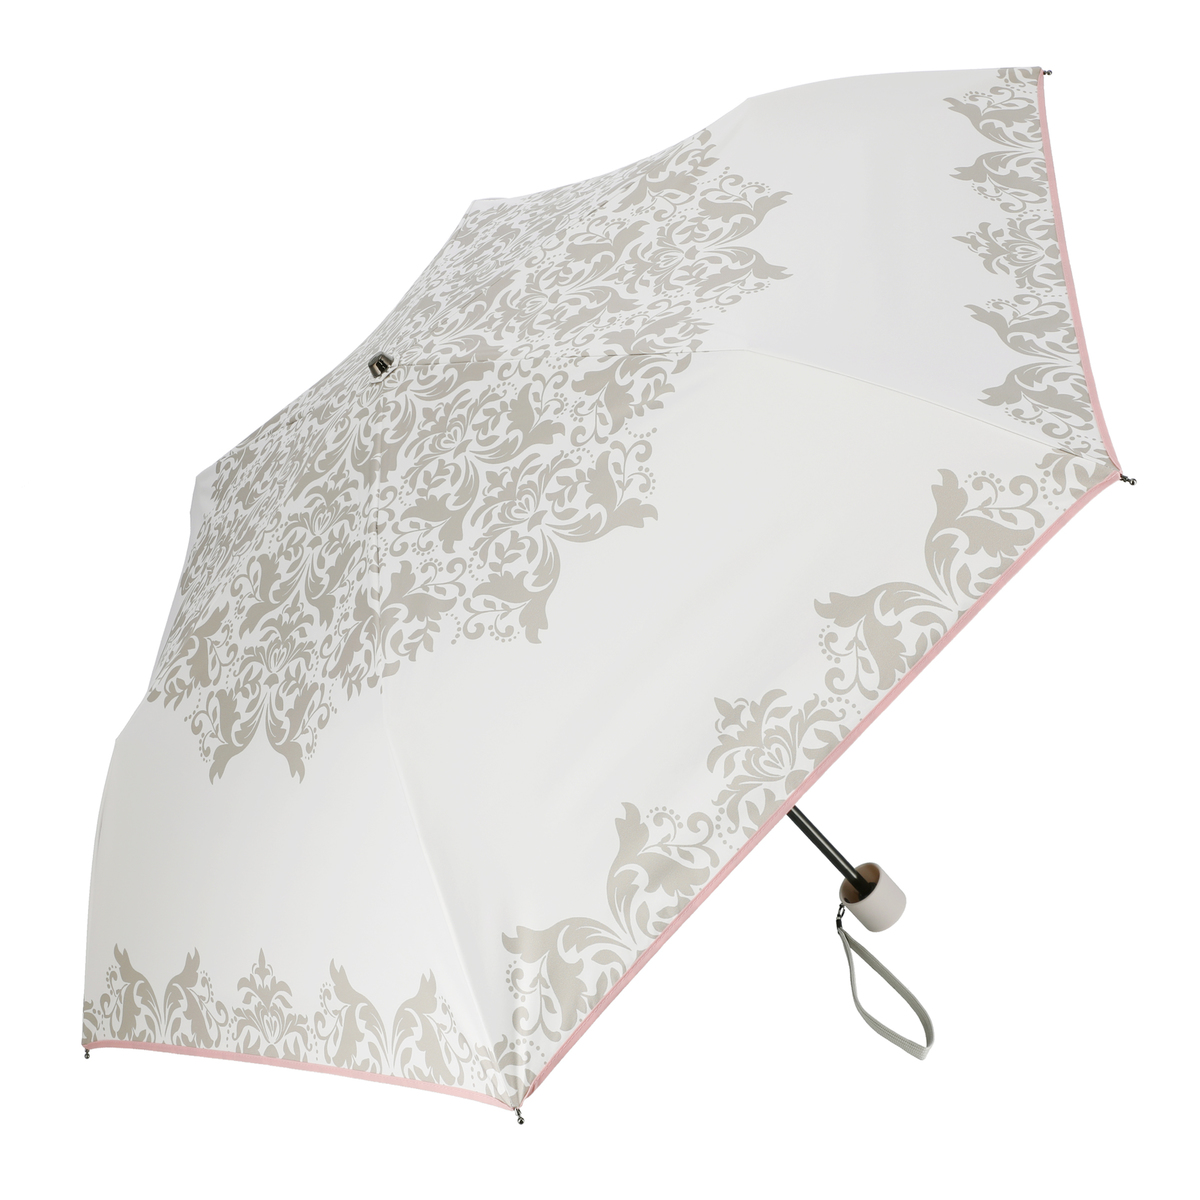  ルナジュメール UV+1級遮光+晴雨兼用 ダマスク柄折傘  オフホワイト